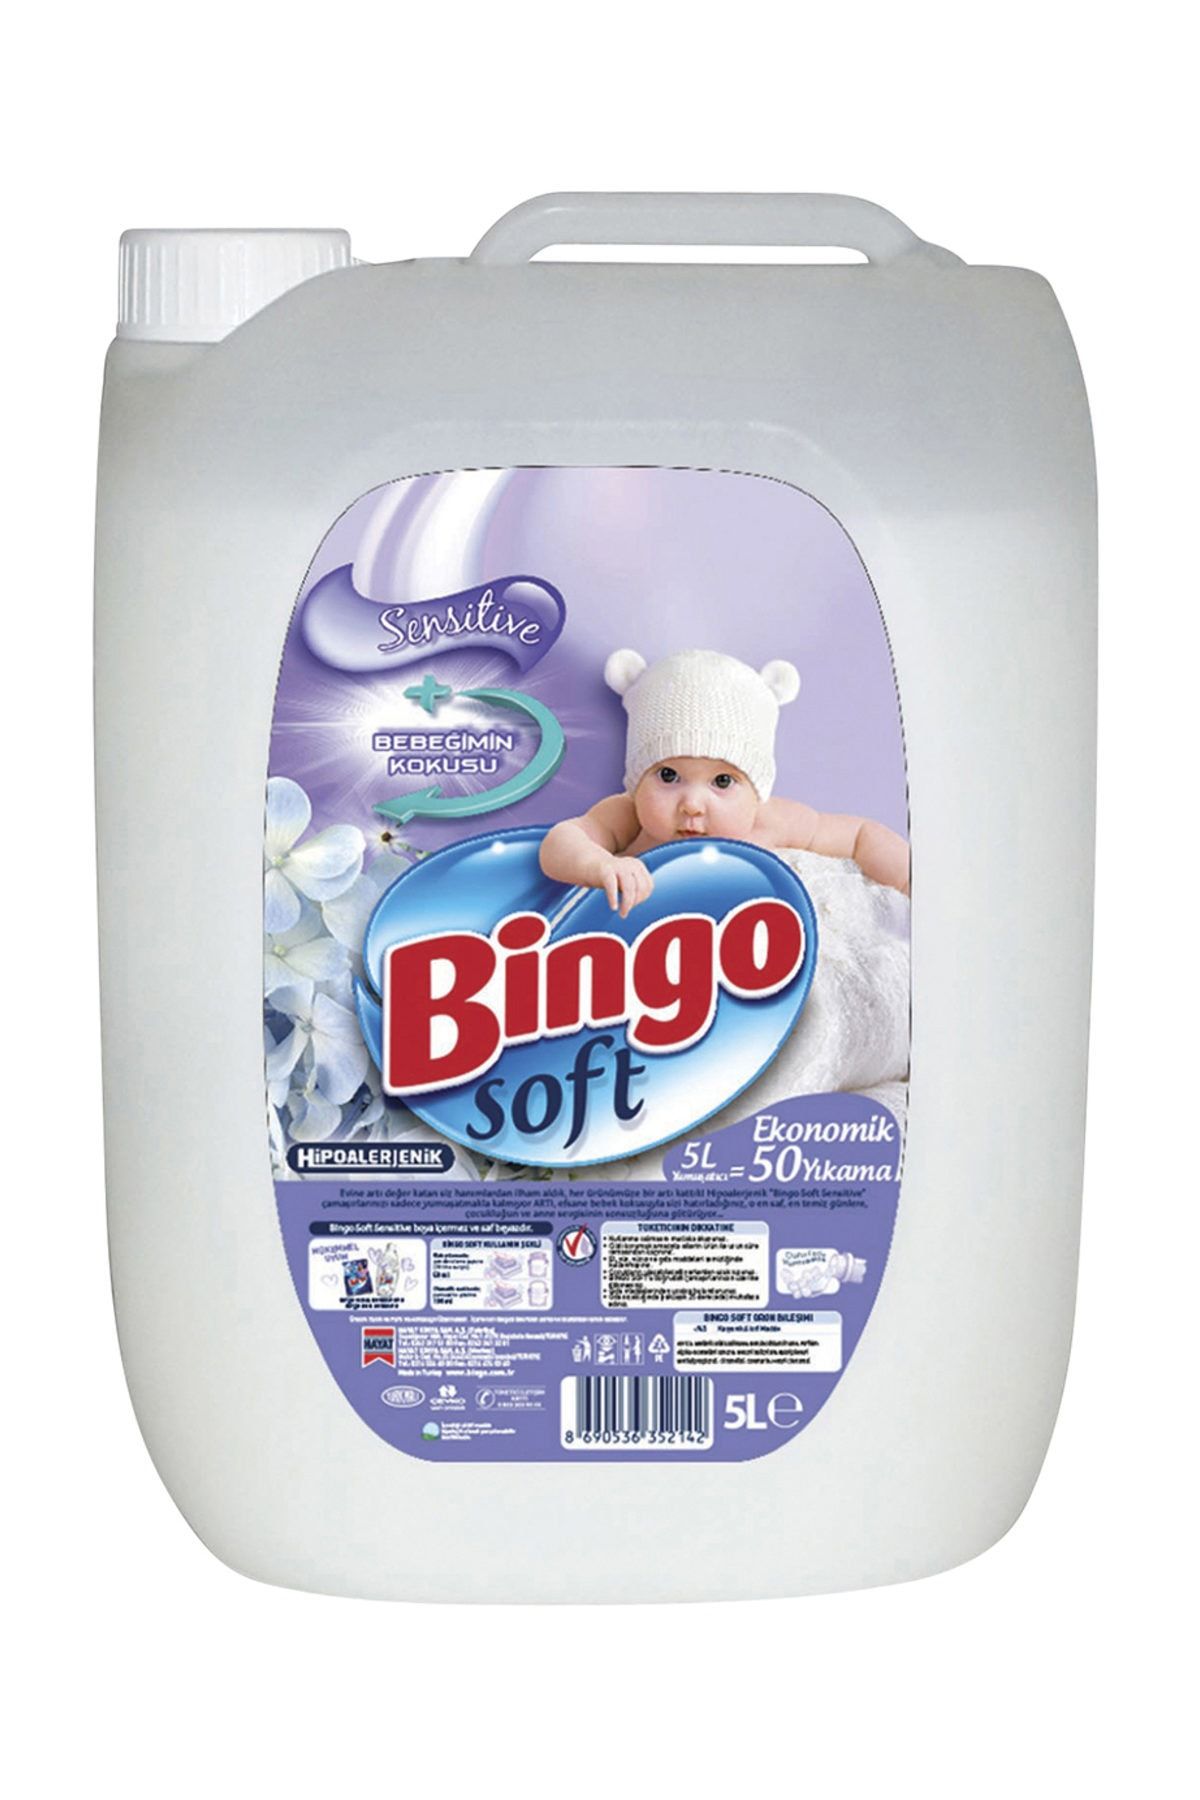 bingo soft yumusatici 5 lt sensitive bebegimin kokusu fiyati yorumlari trendyol